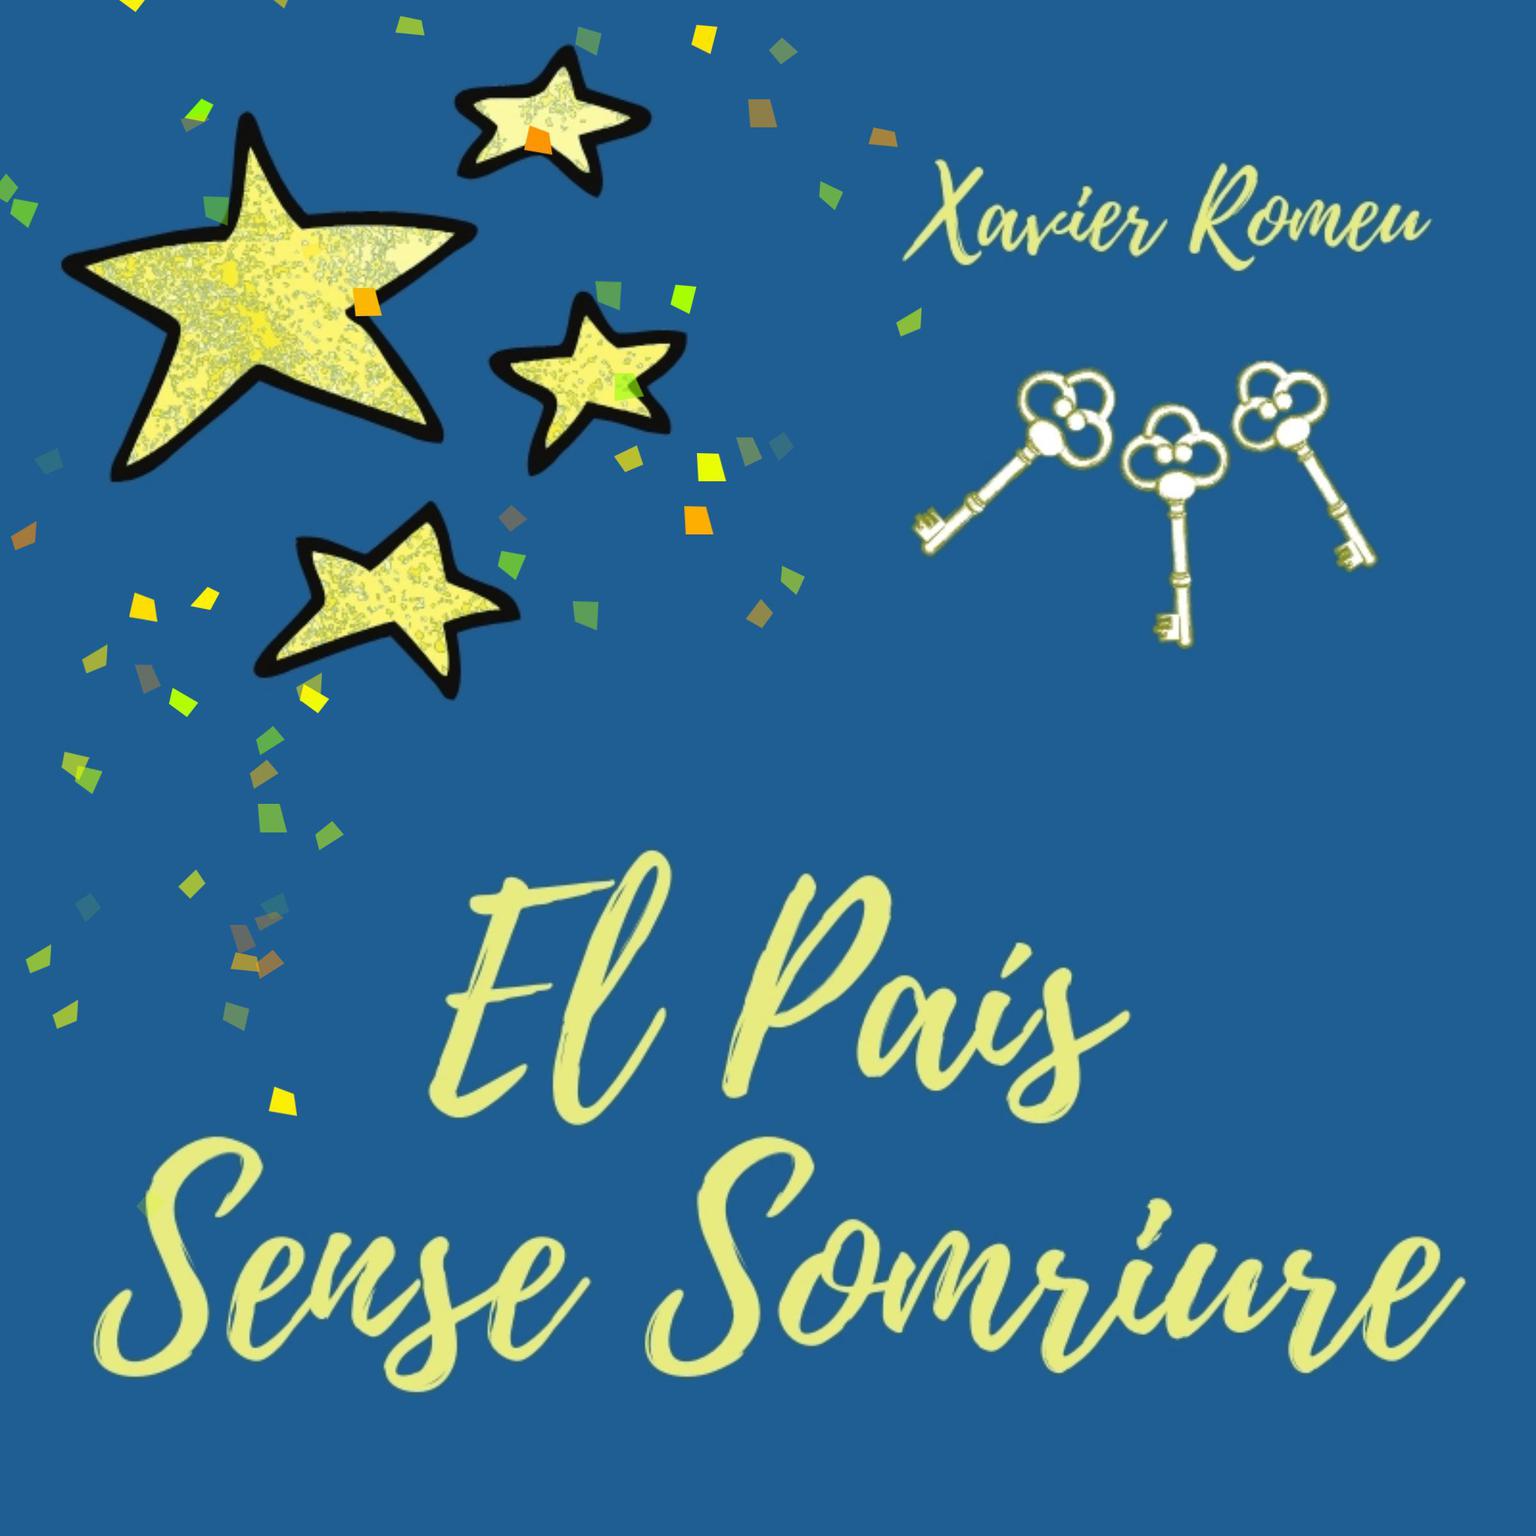 EL PAÍS SENSE SOMRIURE Audiobook, by Xavier Romeu